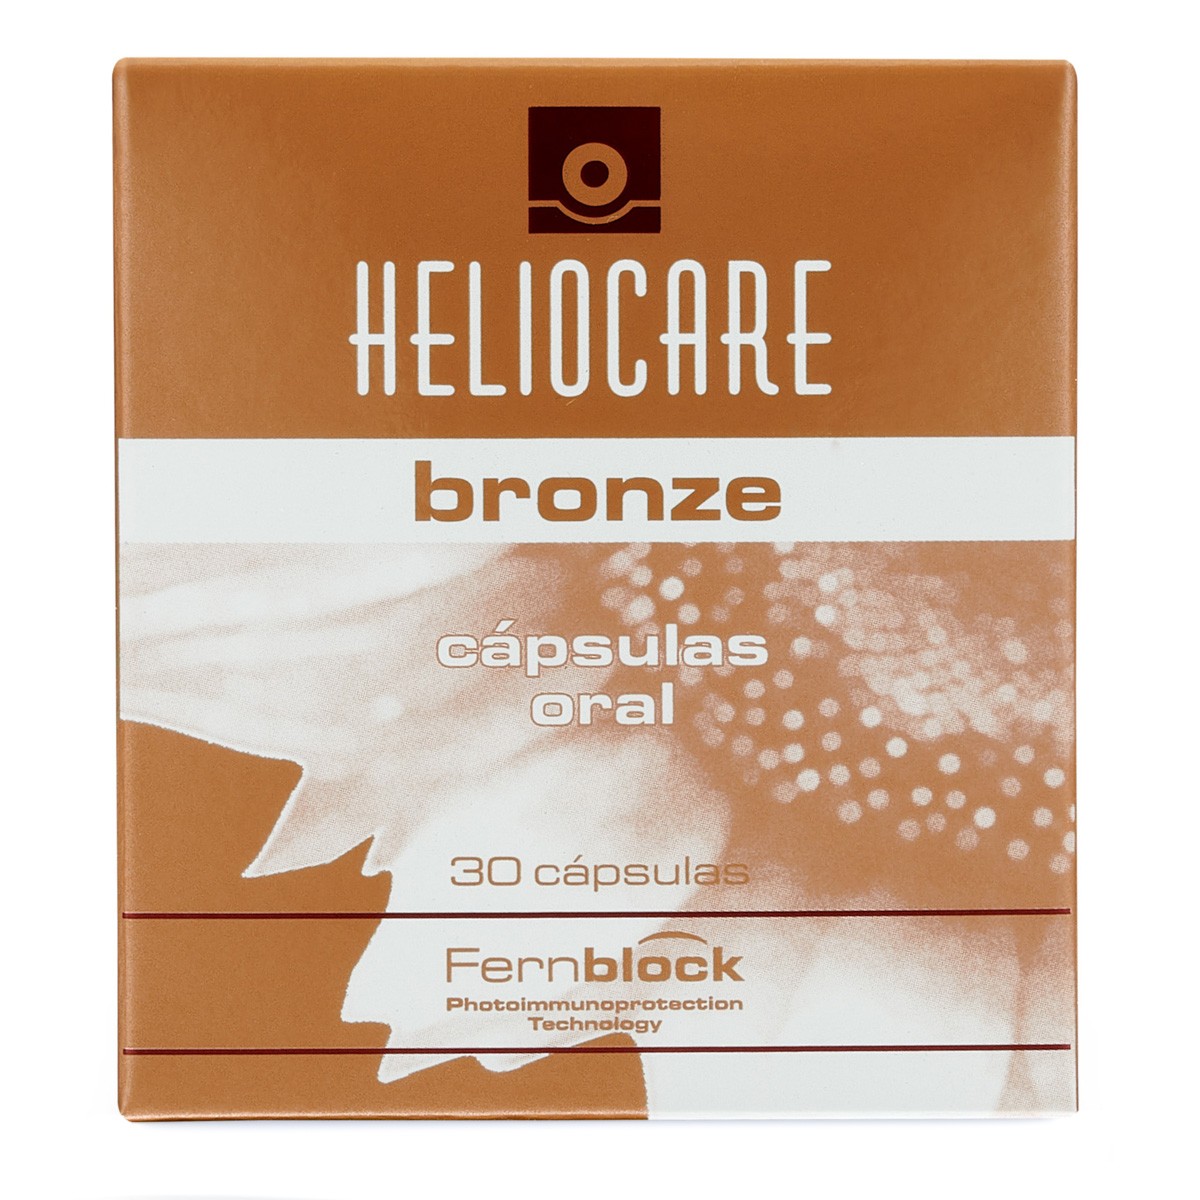 Imagen de Heliocare oral bronze 30 cápsulas